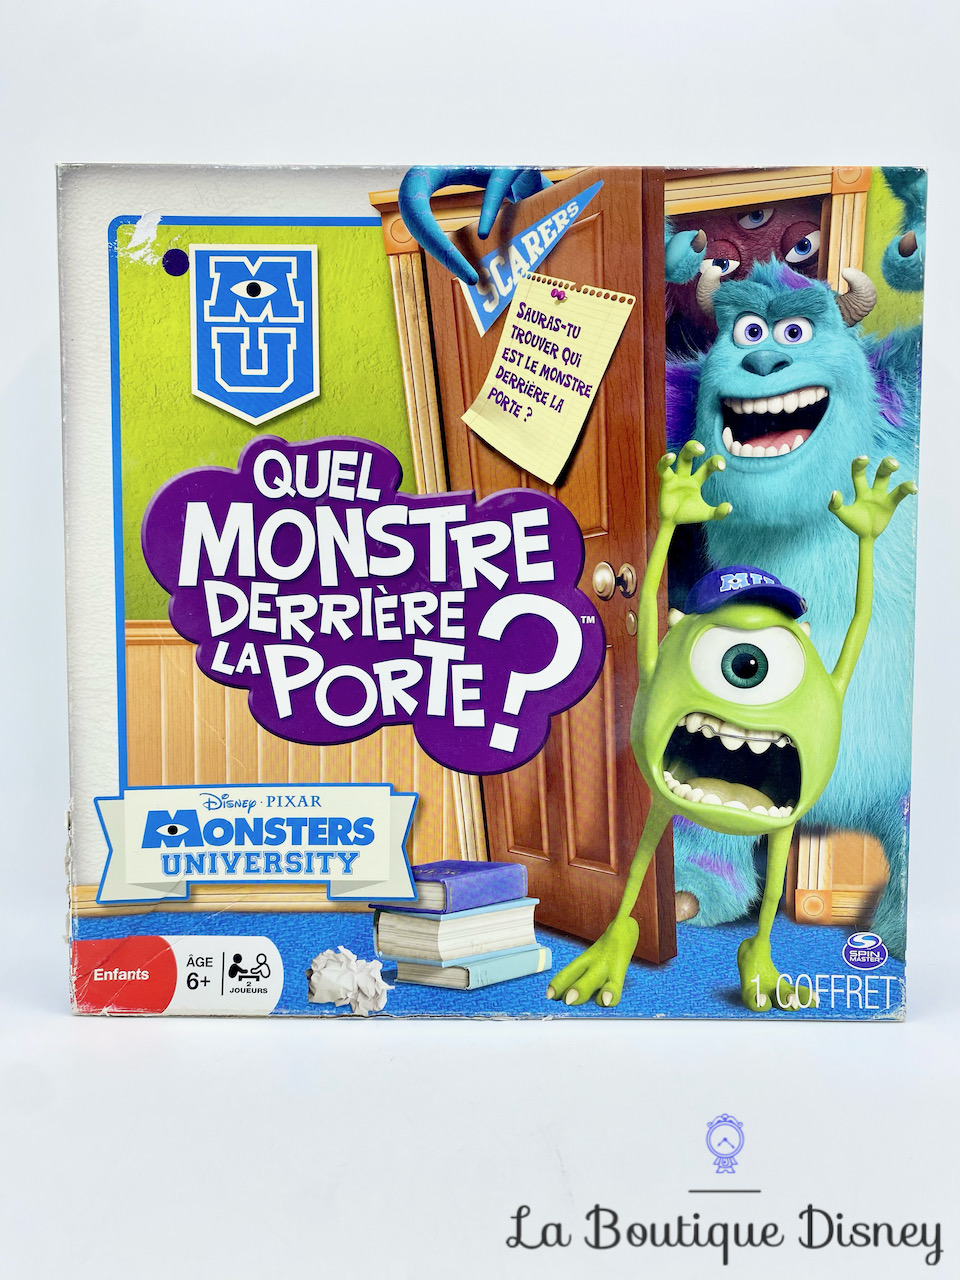 Jeu de société Quel Monstre derrière la porte Monsters University Disney Pixar Spin Masters